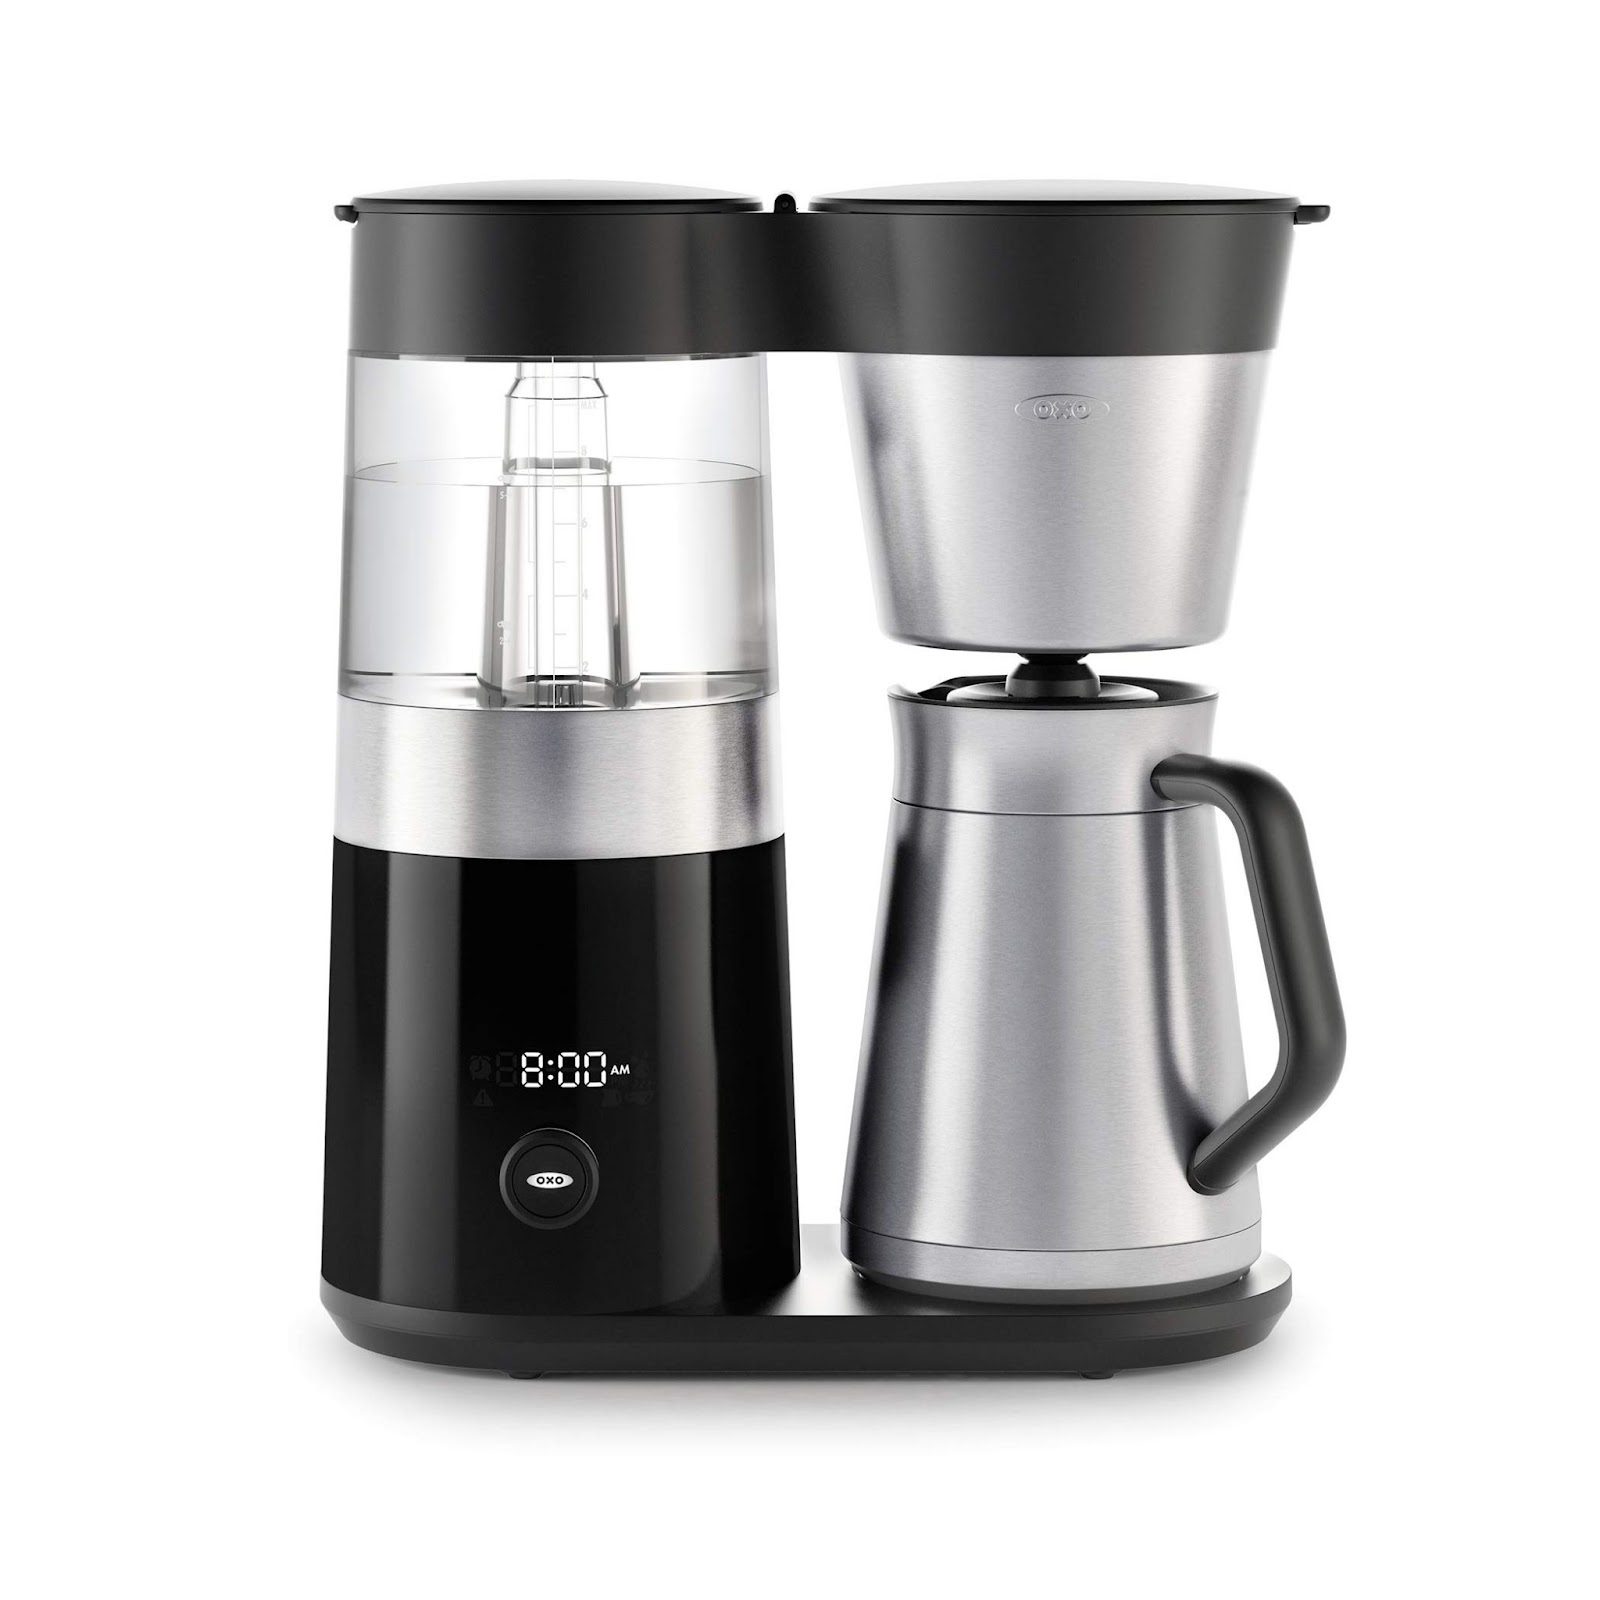 เครื่องชงกาแฟ   OXO Brew 9-Cup Coffee Maker